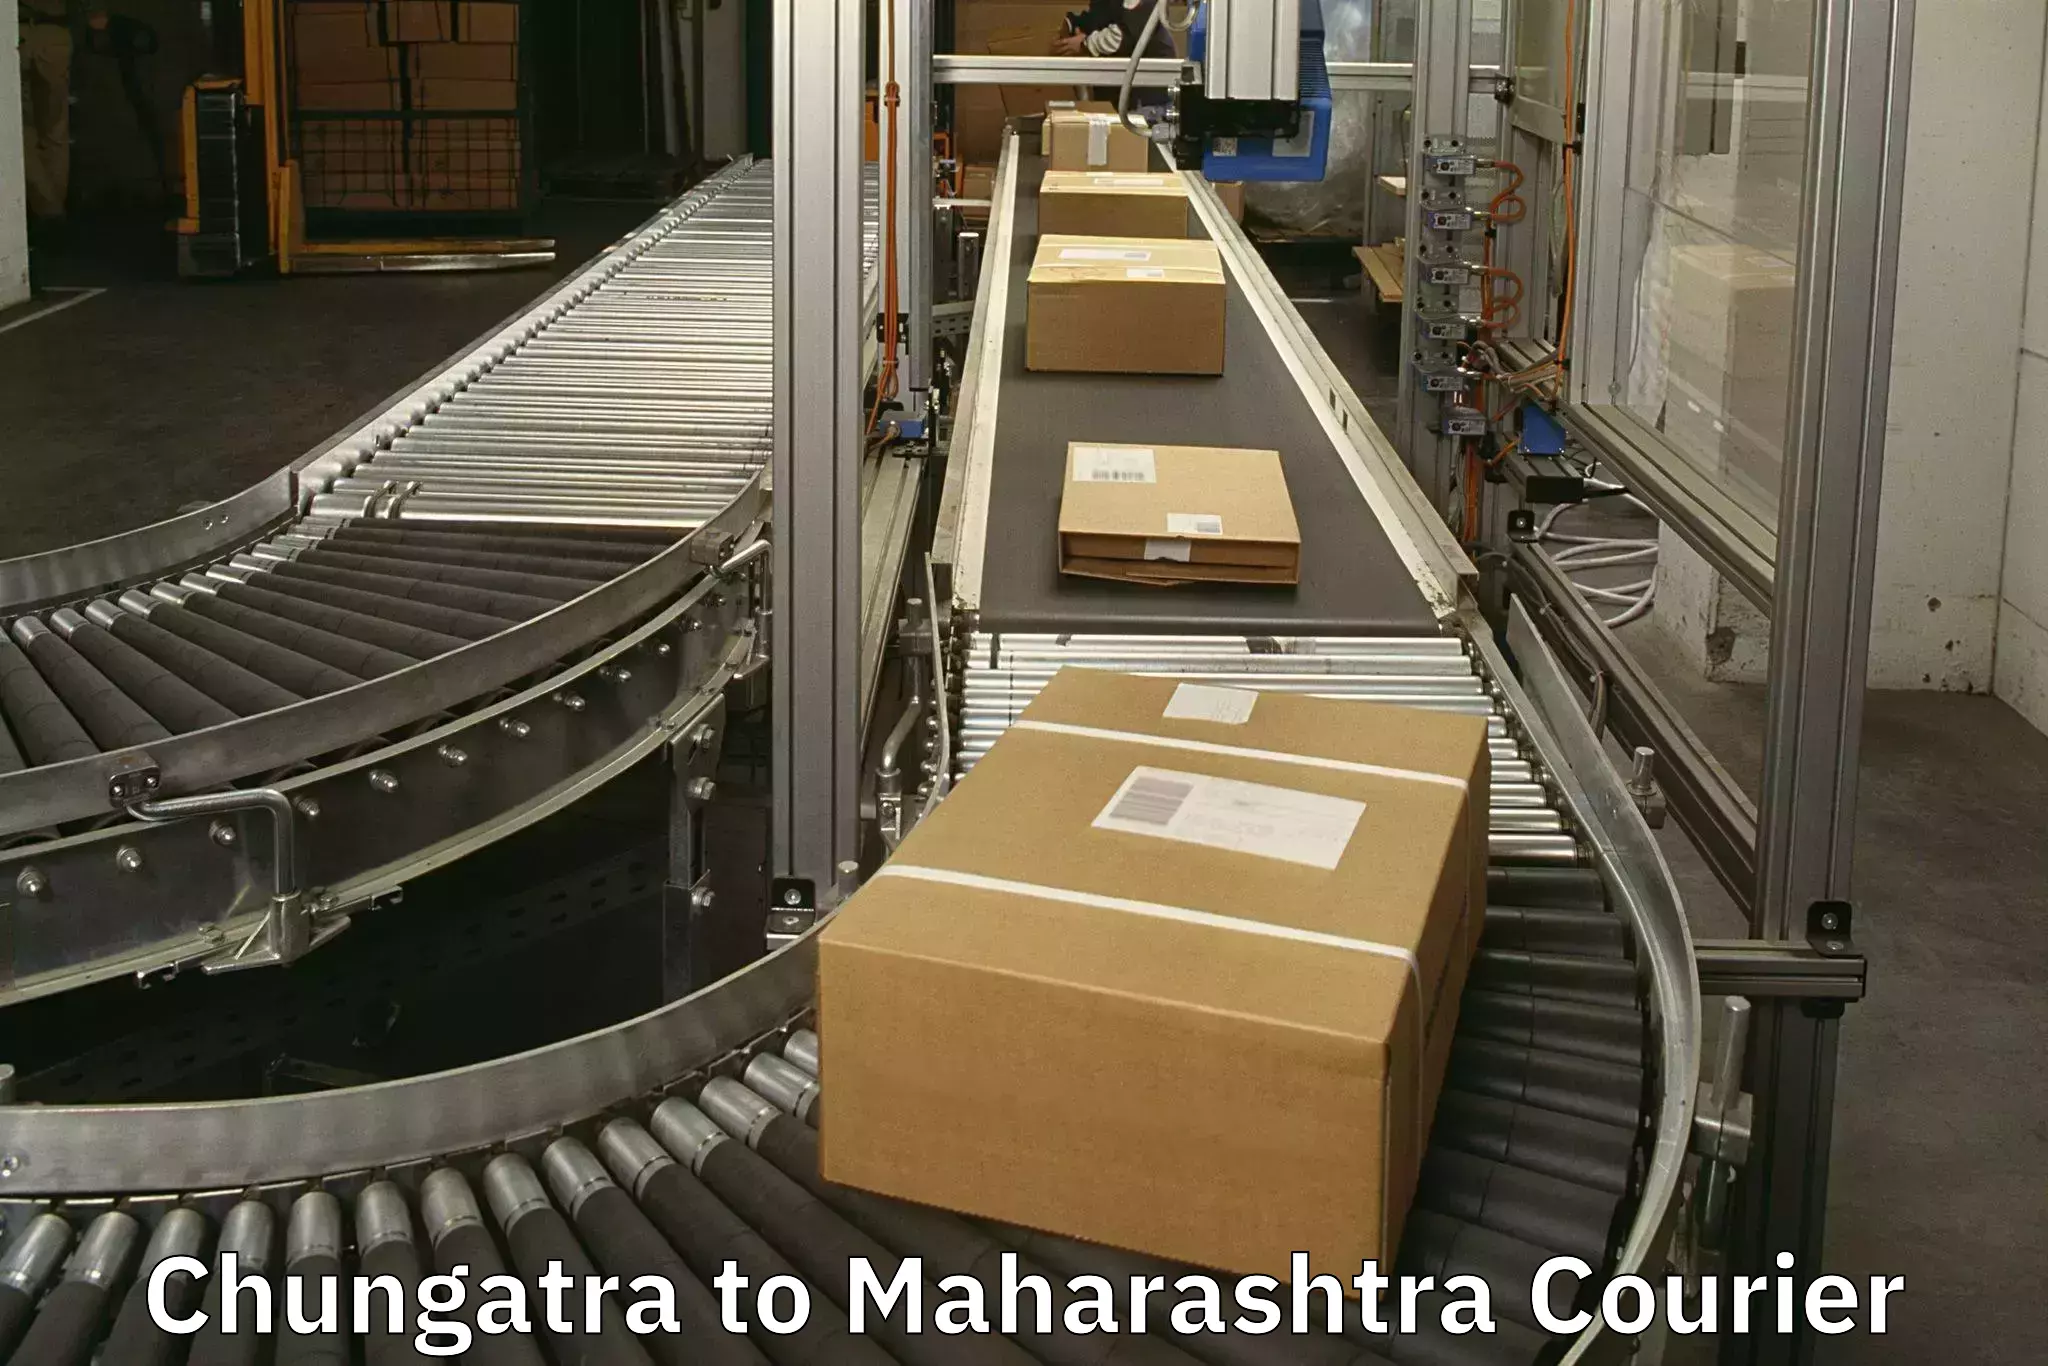 Luggage transfer service in Chungatra to Maharashtra